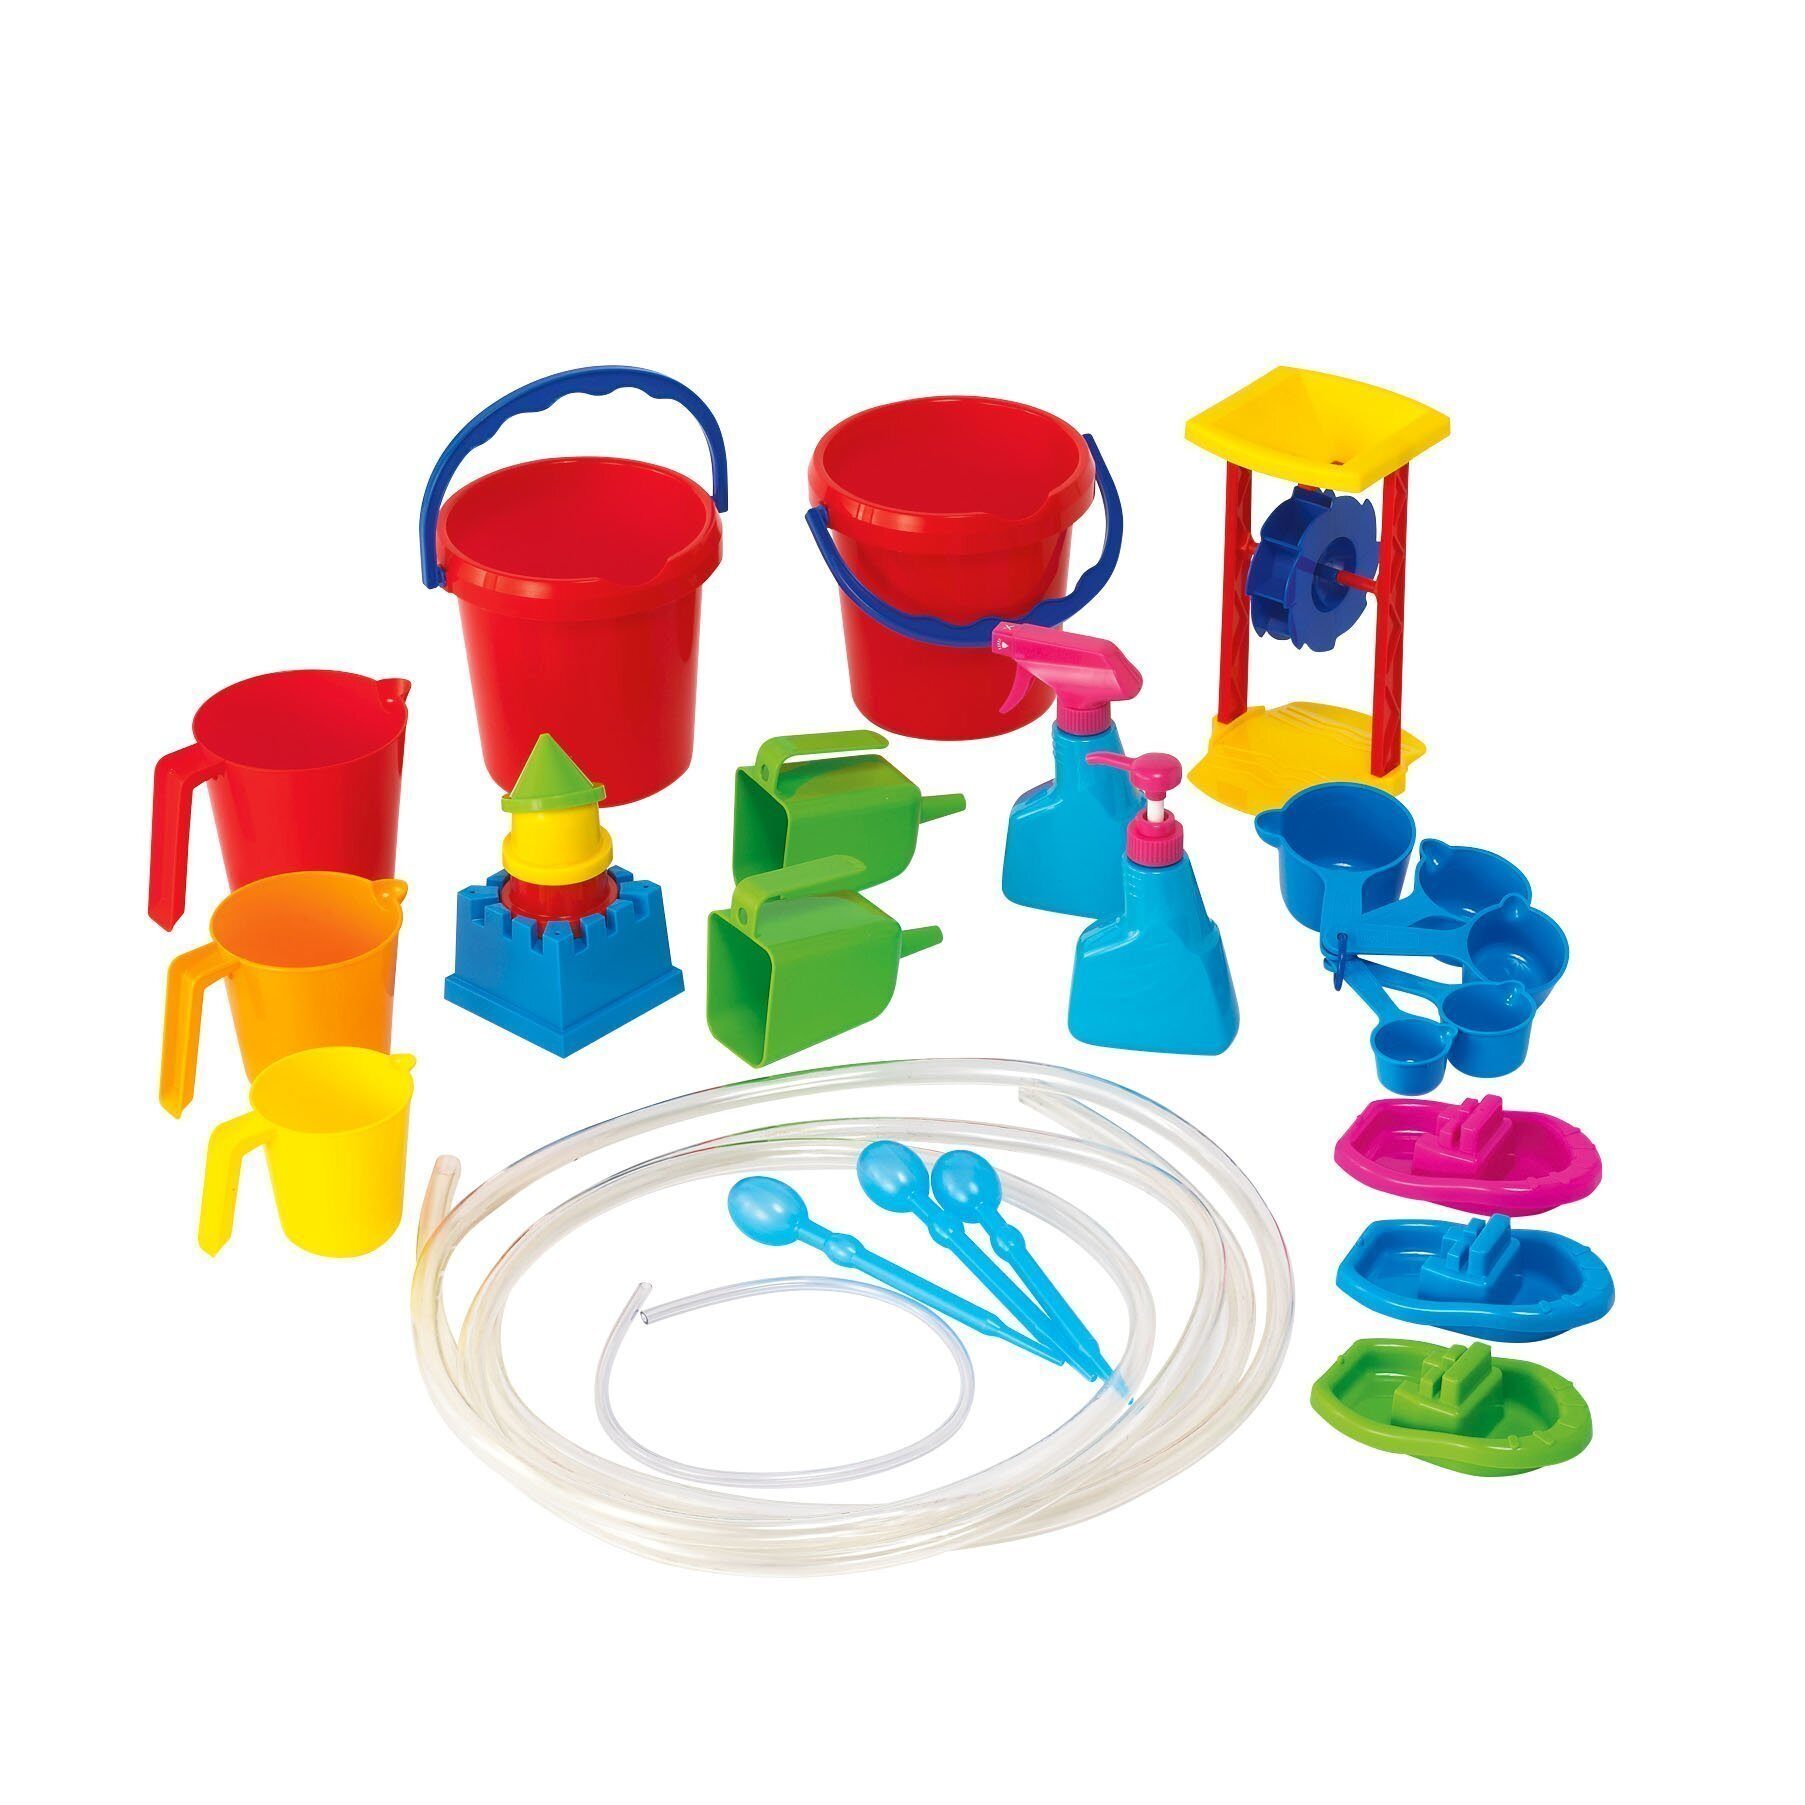 Маркет для игр для детей. Игрушки для воды для детей. Набор для игр с водой. Пластиковые игрушки. Игрушки для песка и воды.